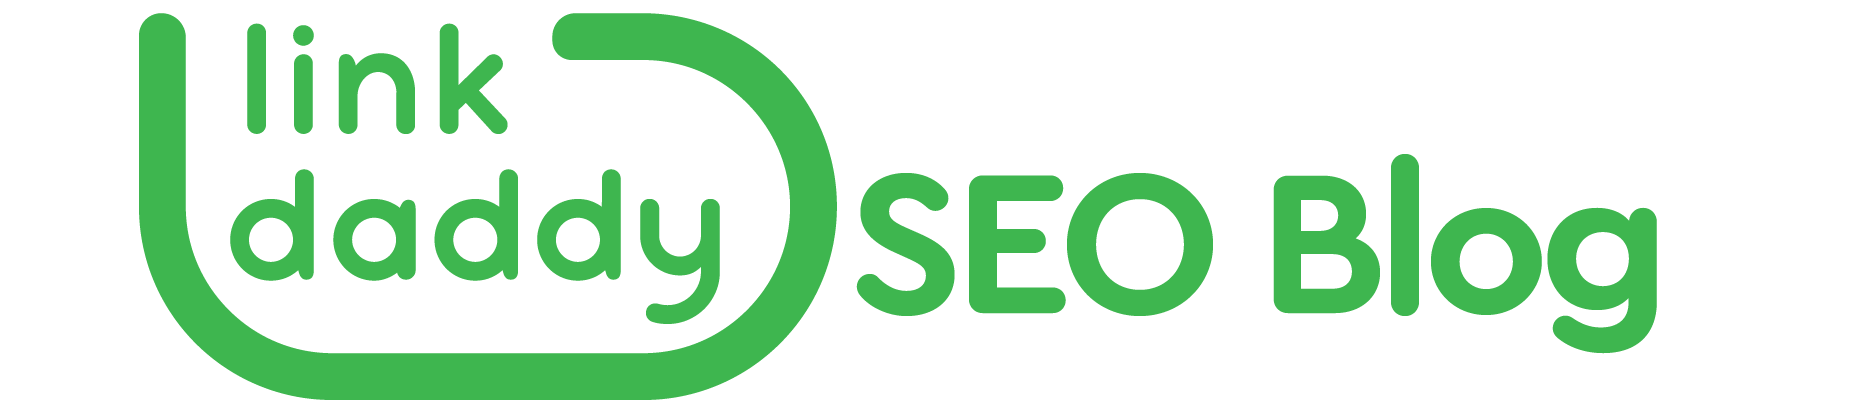 https://storage.googleapis.com/cloudsites/seo-services/86790ecer/img/cropped-linkdaddy-seoblog-logo.png